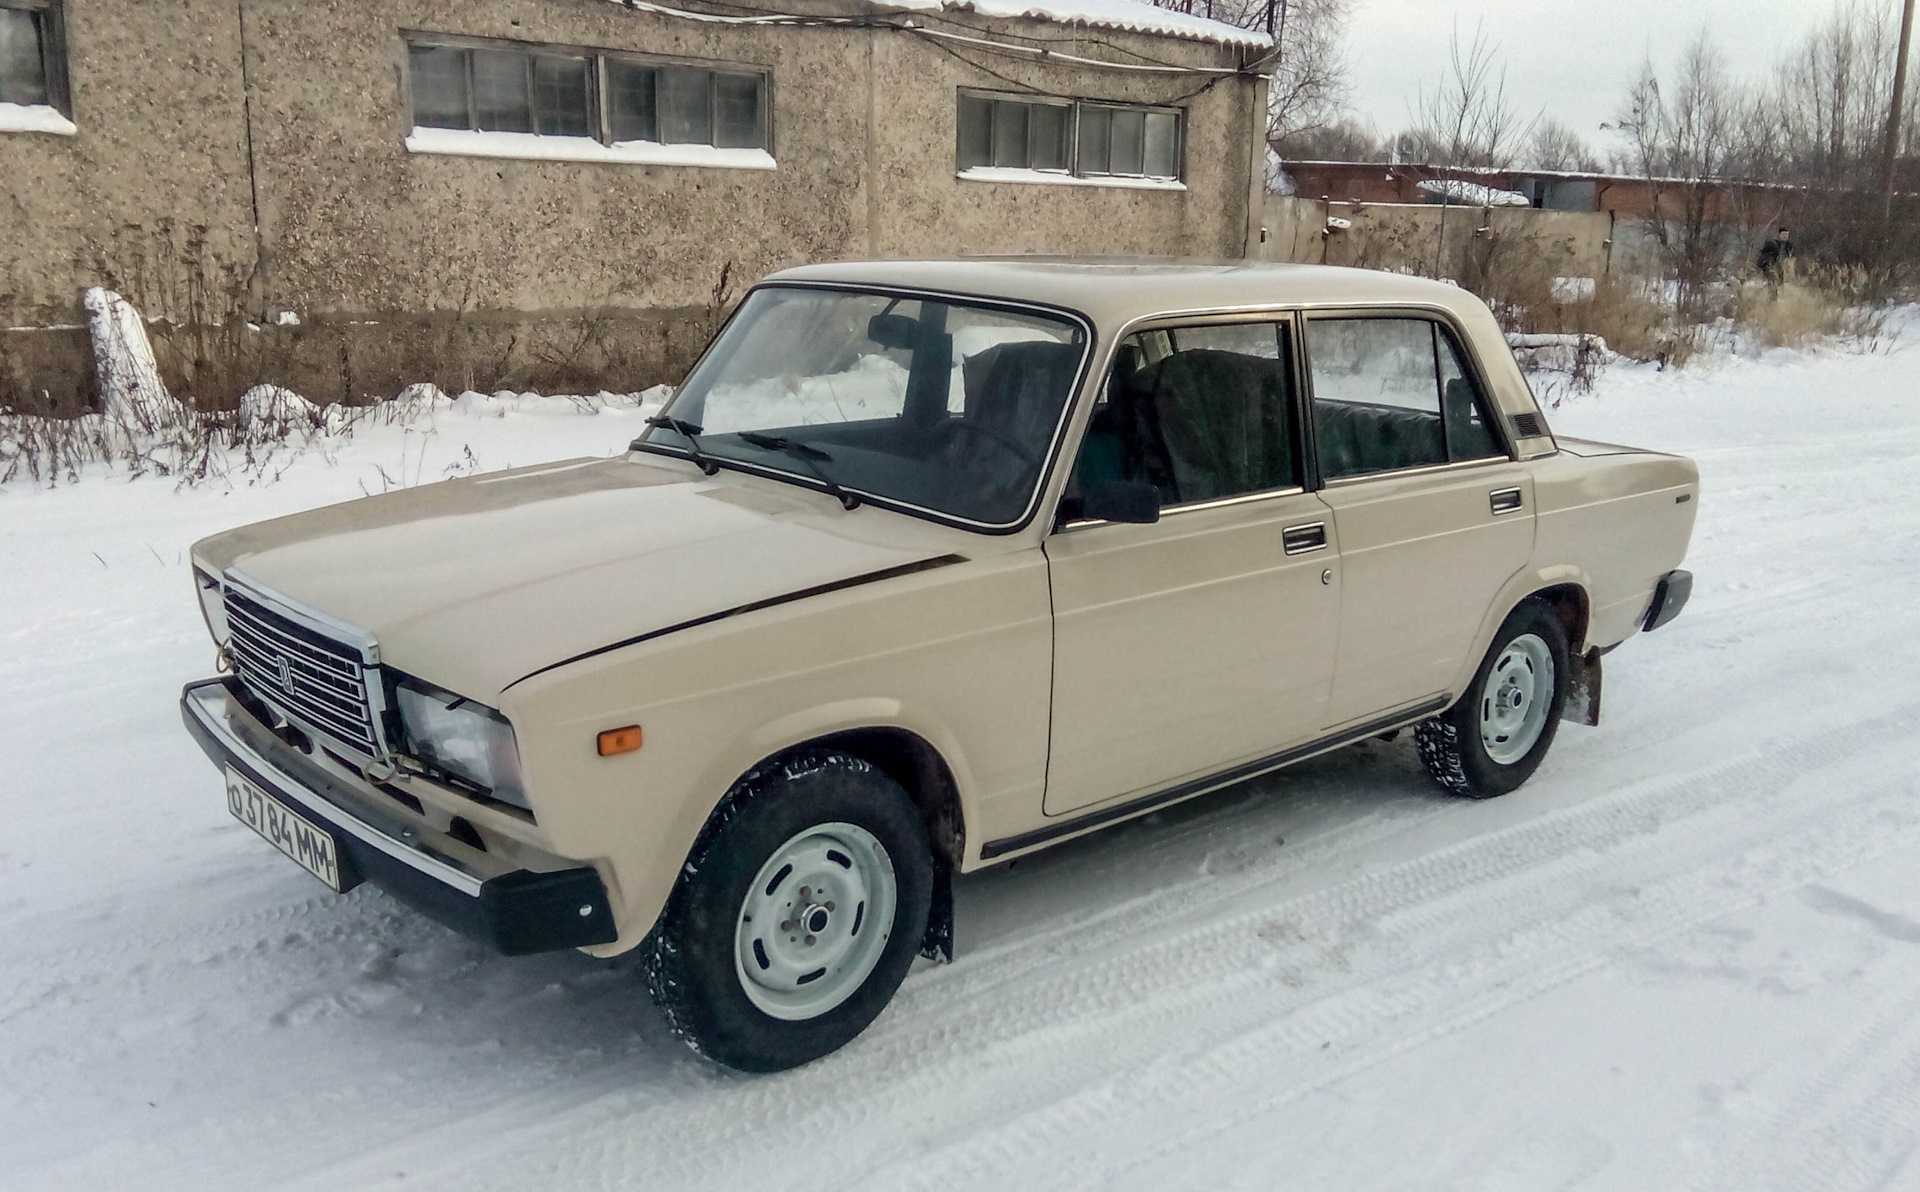 Купить Машину В Новосибирске Семерку На Авито